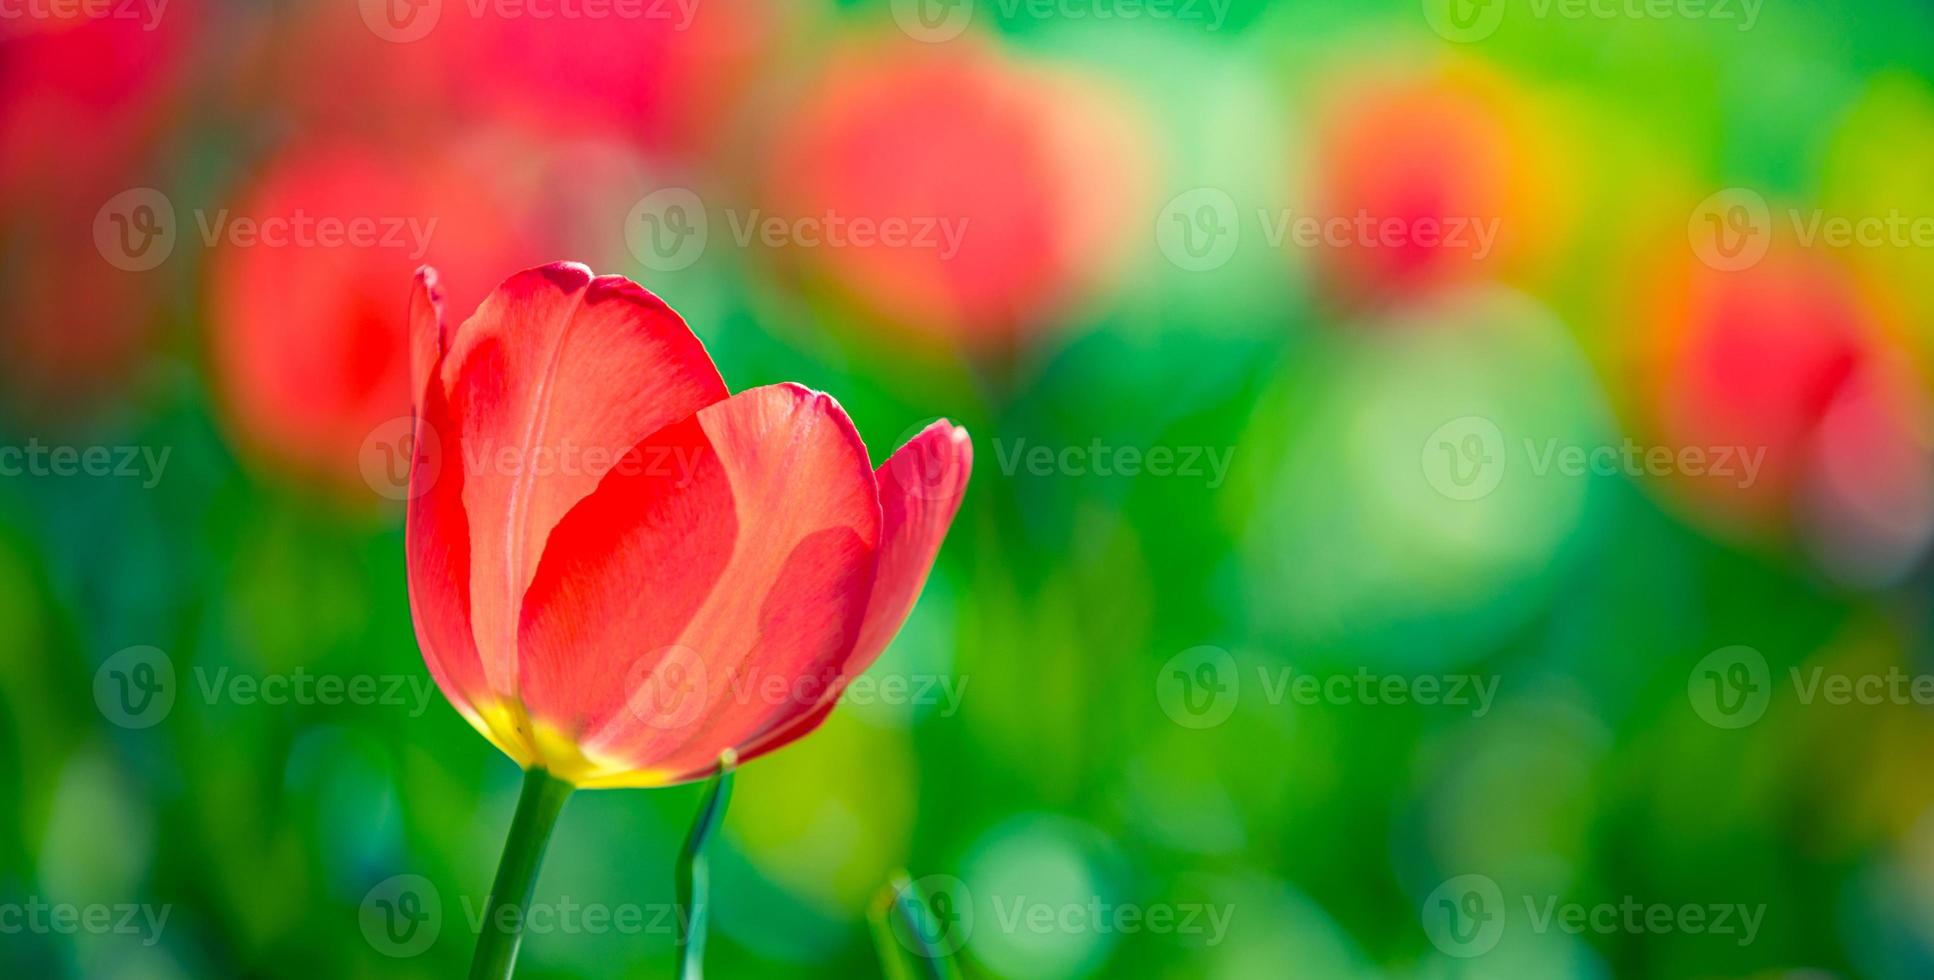 belle tulipe blanche rouge solitaire dans la nature printanière pour la conception de cartes et la bannière web. gros plan serein, paysage de nature florale d'amour romantique idyllique. feuillage luxuriant flou abstrait photo